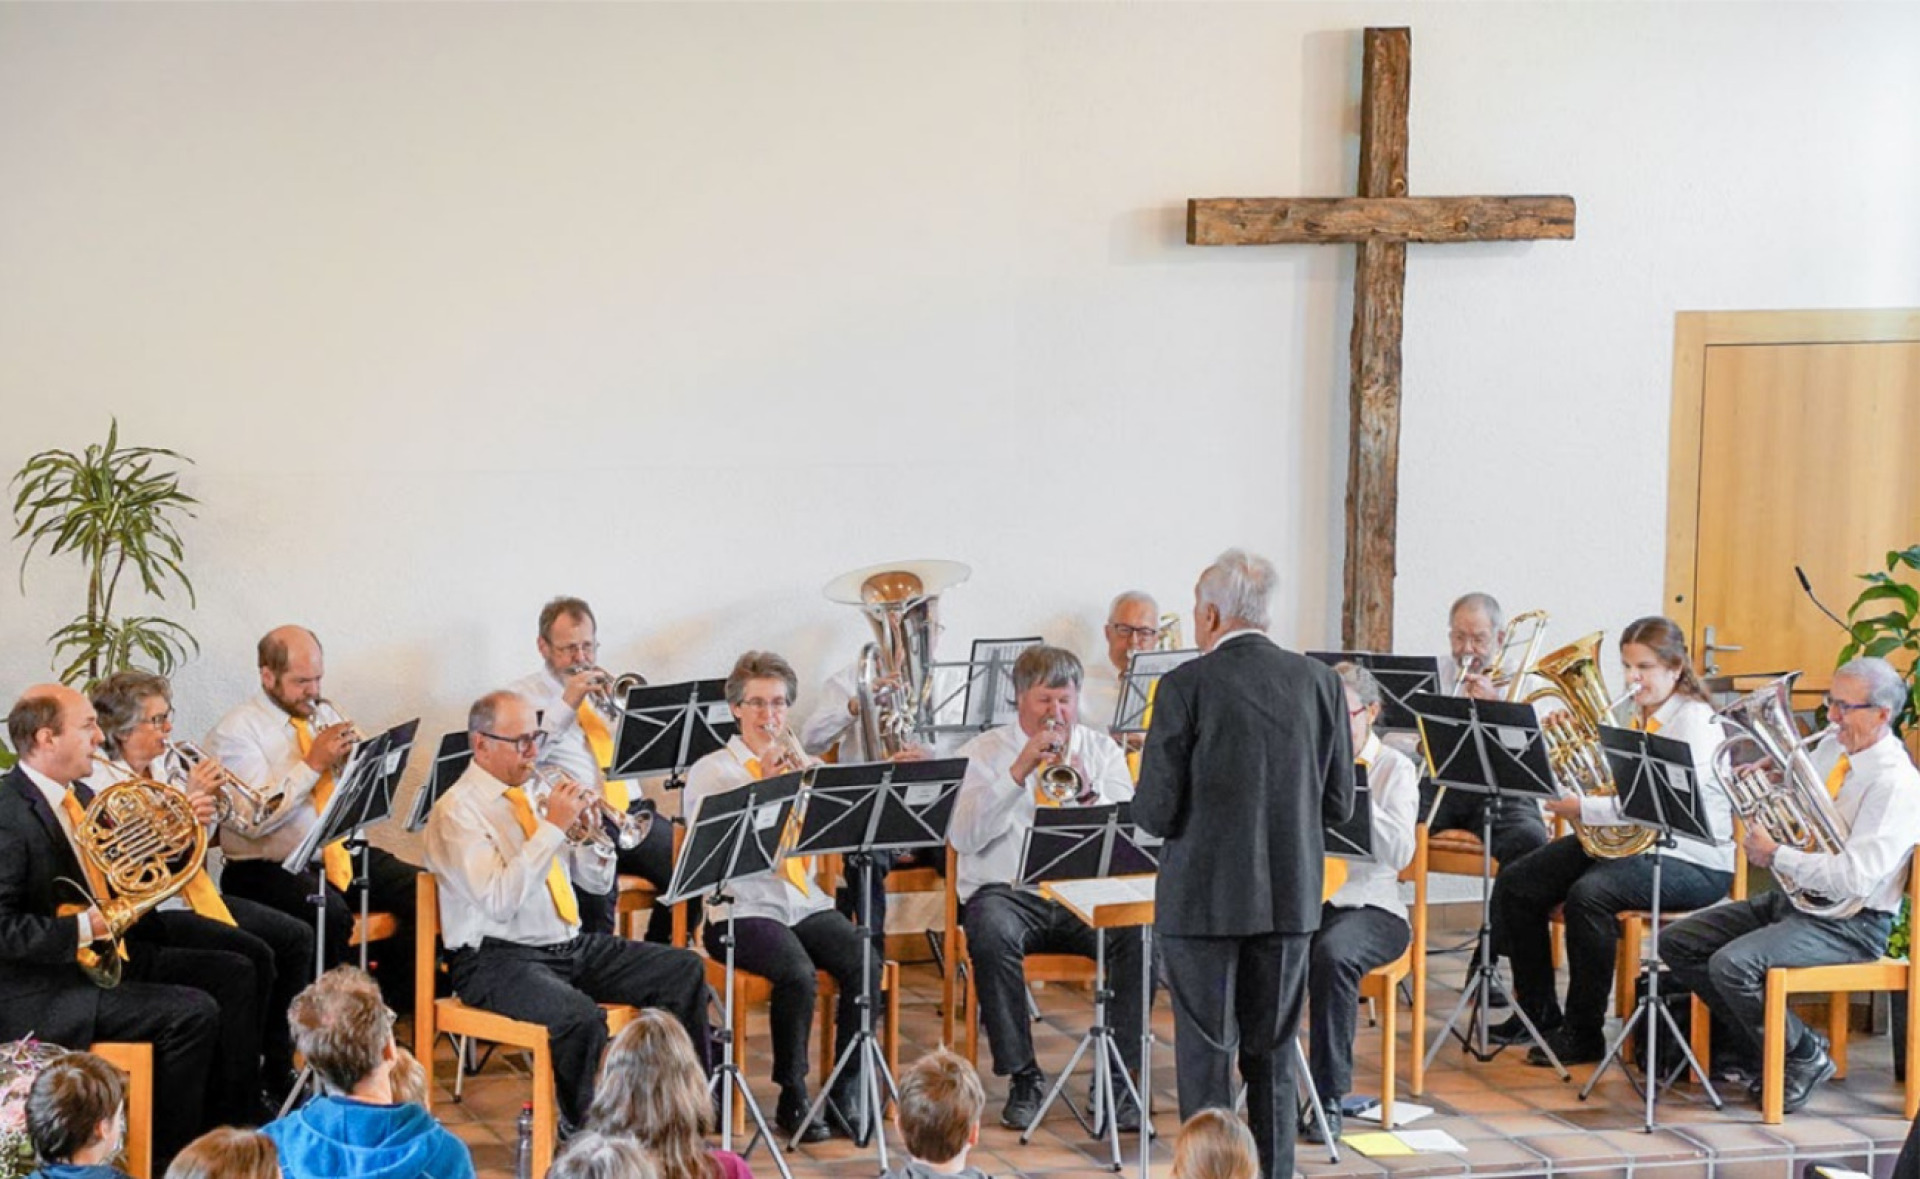 Der Posaunenchor Frutigen unterhielt sein Publikum auf hohem Niveau und erhielt Unterstützung von einem Organisten und einem Waldhornspieler. BILD: ZVG / STEFAN HERRMANN